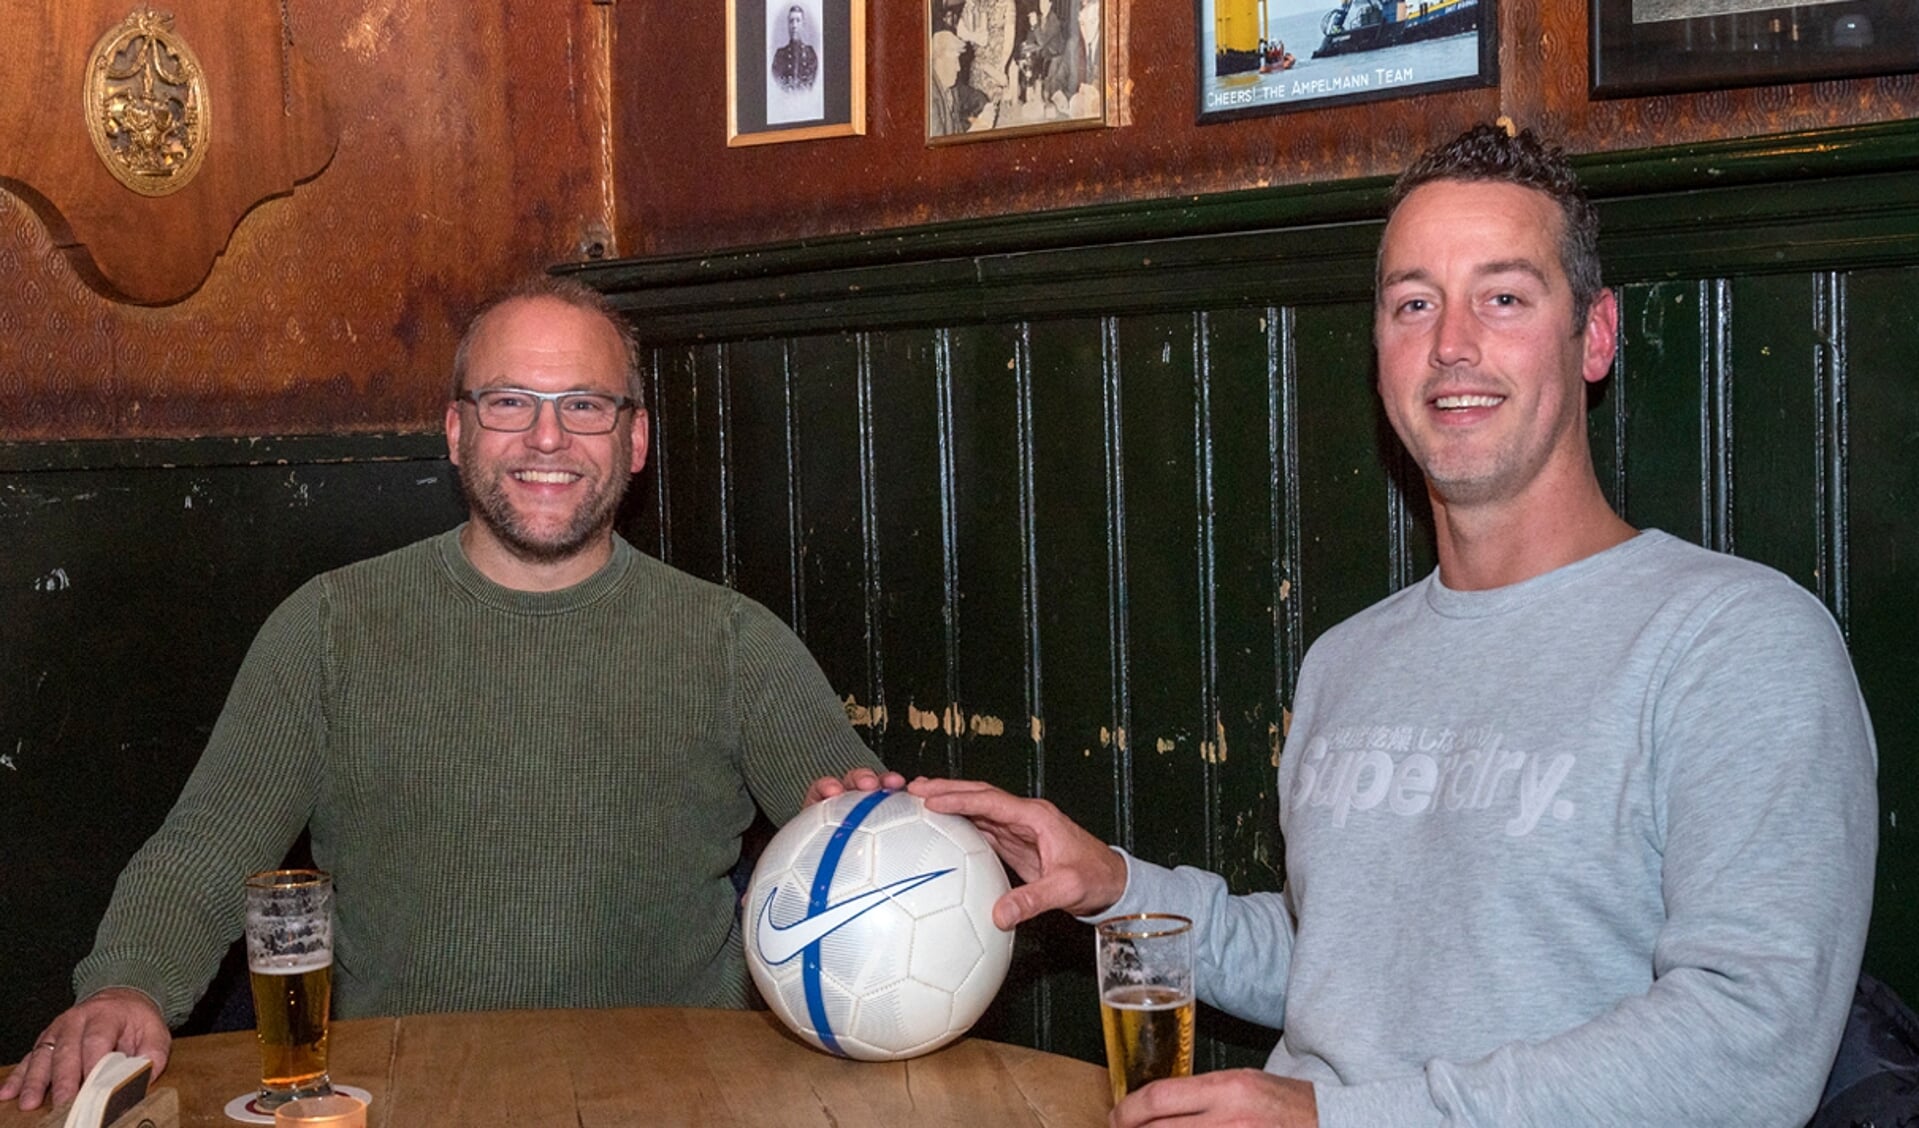 Jakob Scholten en Ben van Beurden kijken met plezier terug op hun voetbaltijd: "Wij hadden soms meer kratten dan ballen.” (foto: Roel van Dorsten)